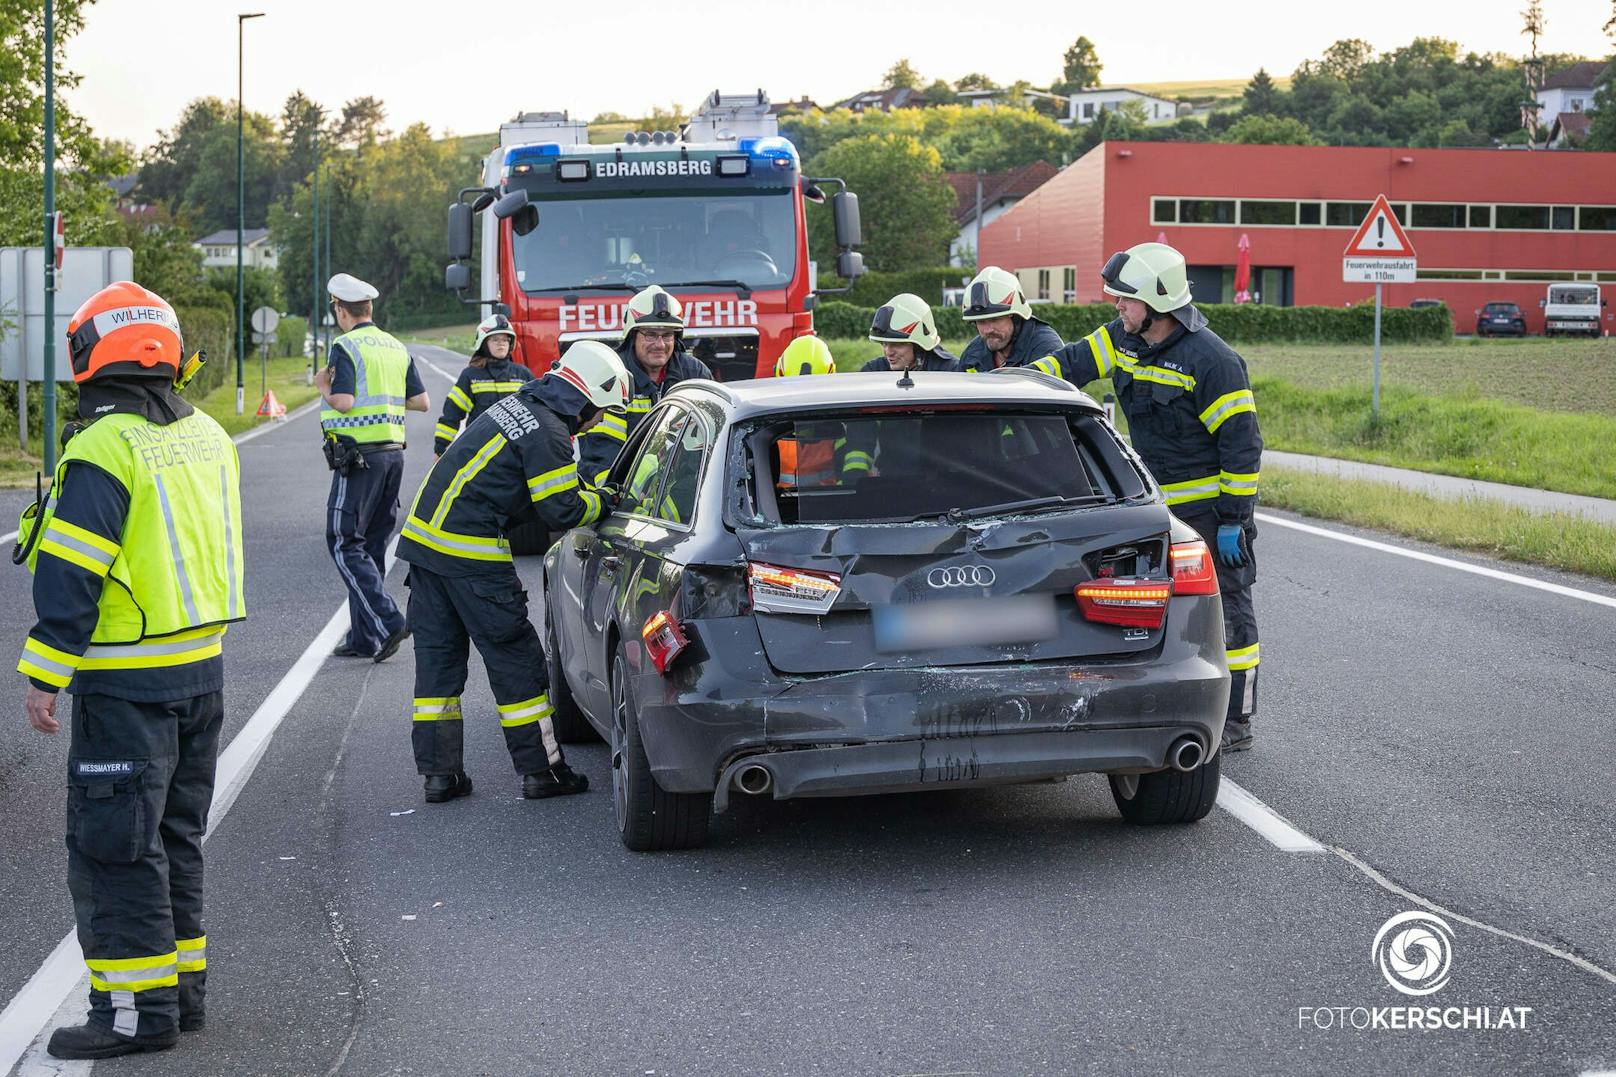 In Fahrtrichtung Linz kam es aus bisher unbekannter Ursache zu einem Zusammenstoß zwischen einem Auto und einem Linienbus.